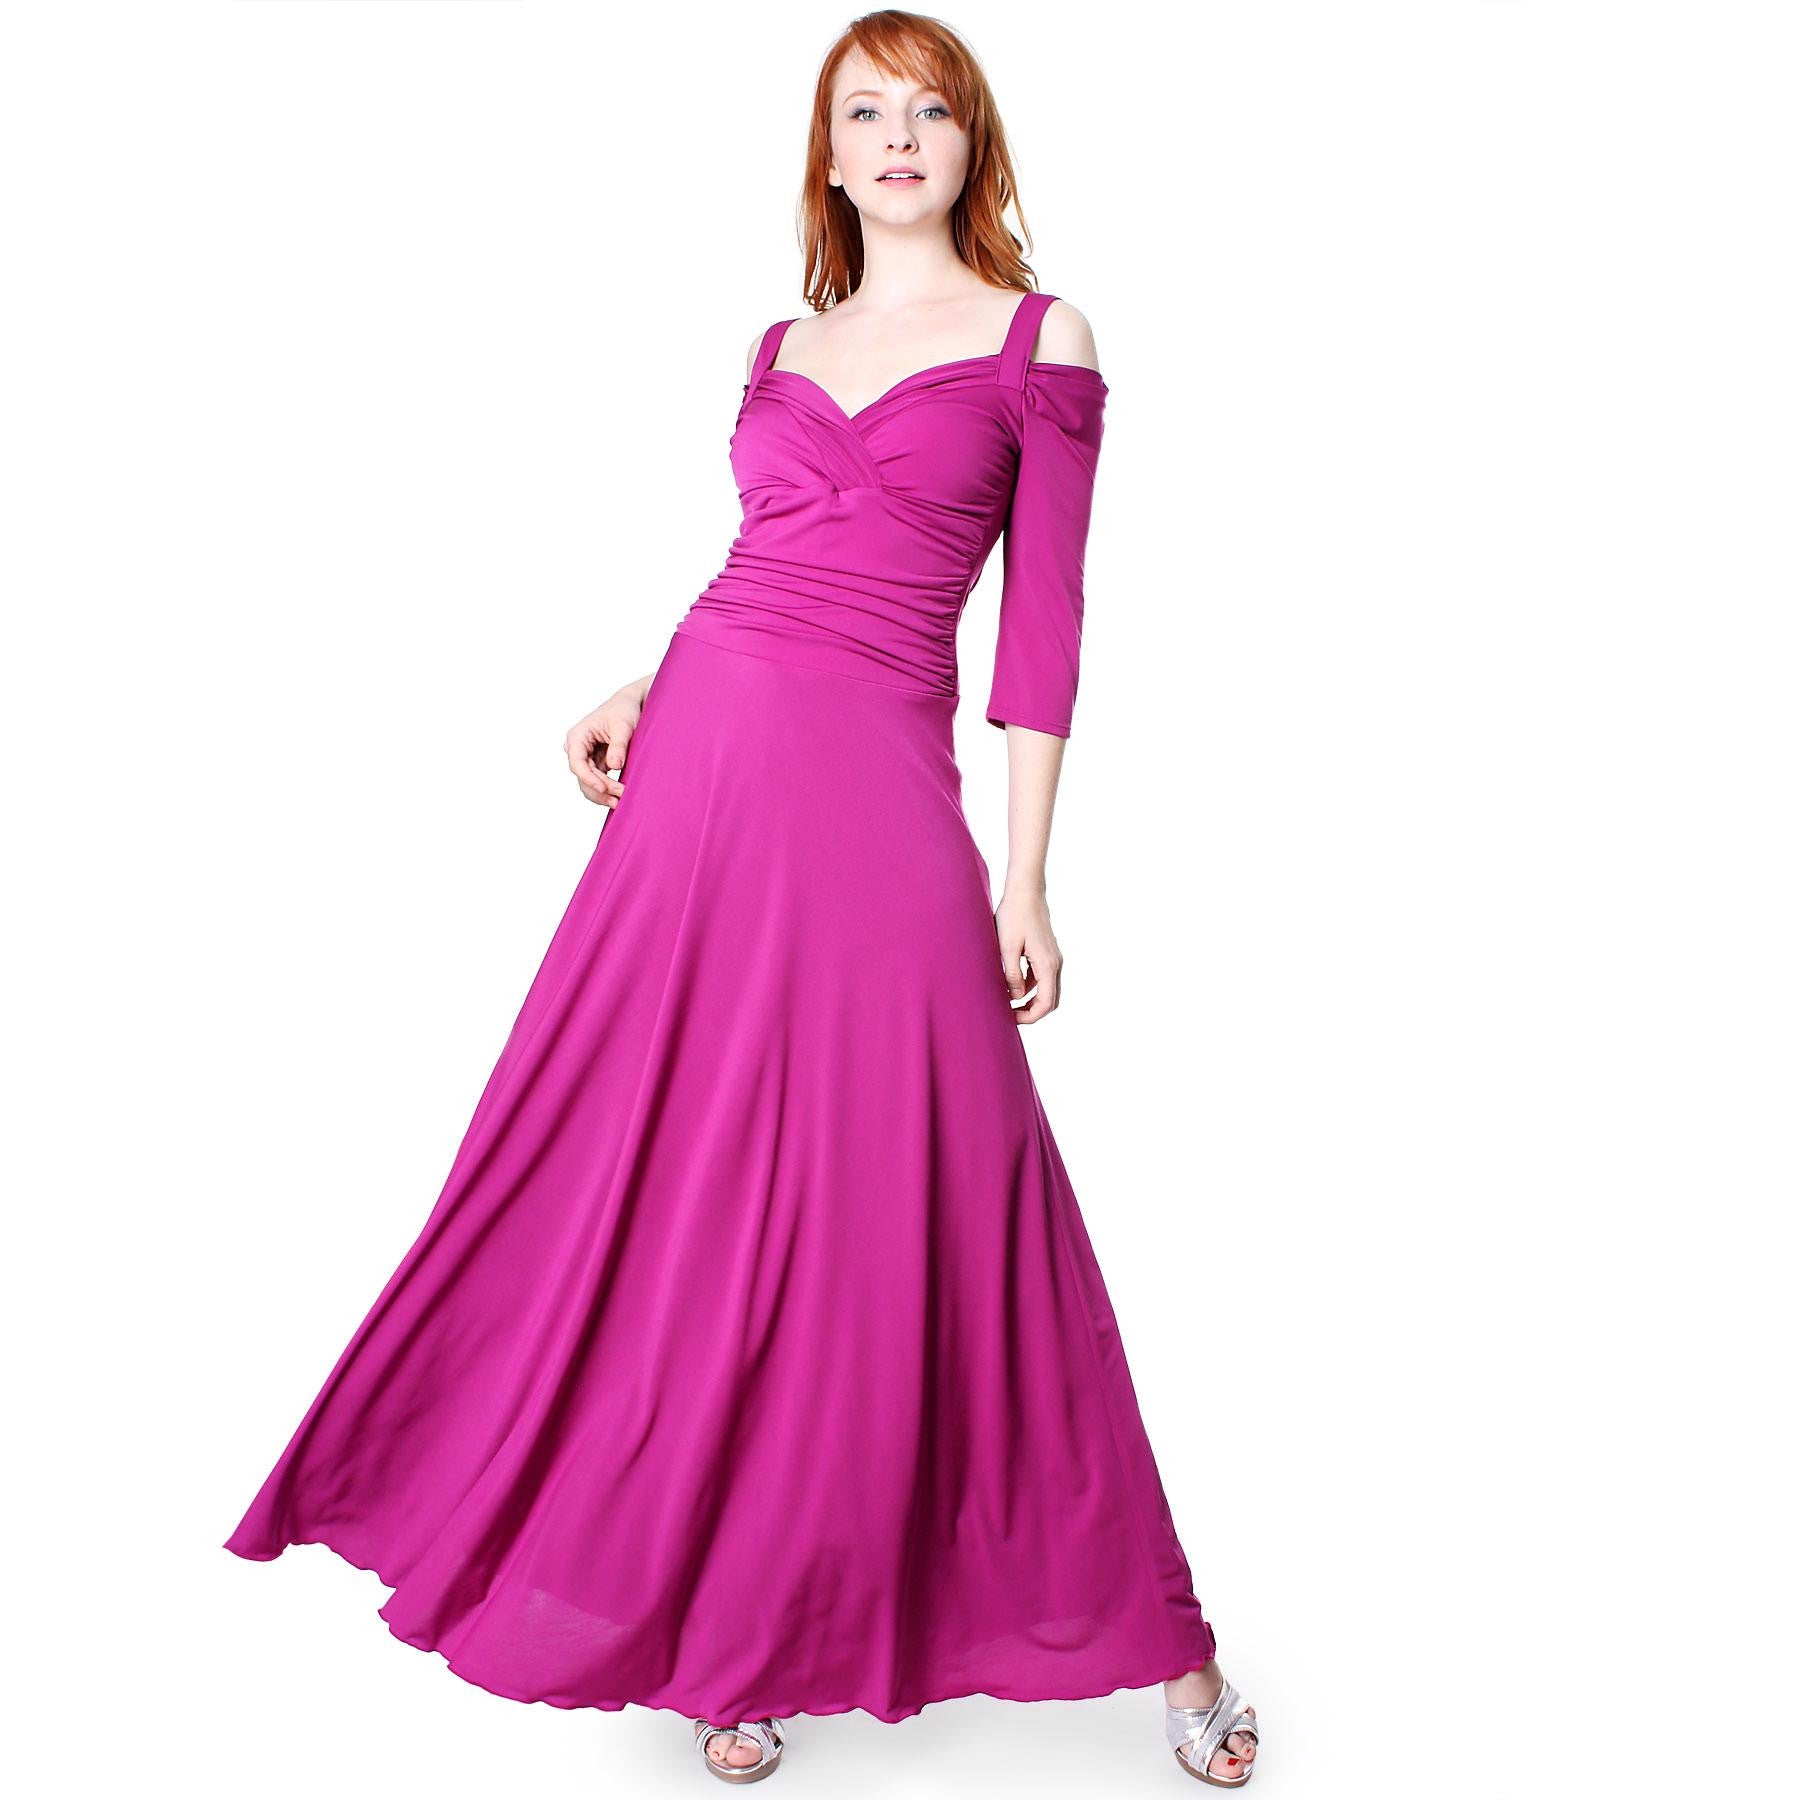 Evanese Women's Elegant Slip On Long Formal Evening Dress with 3/4 ...